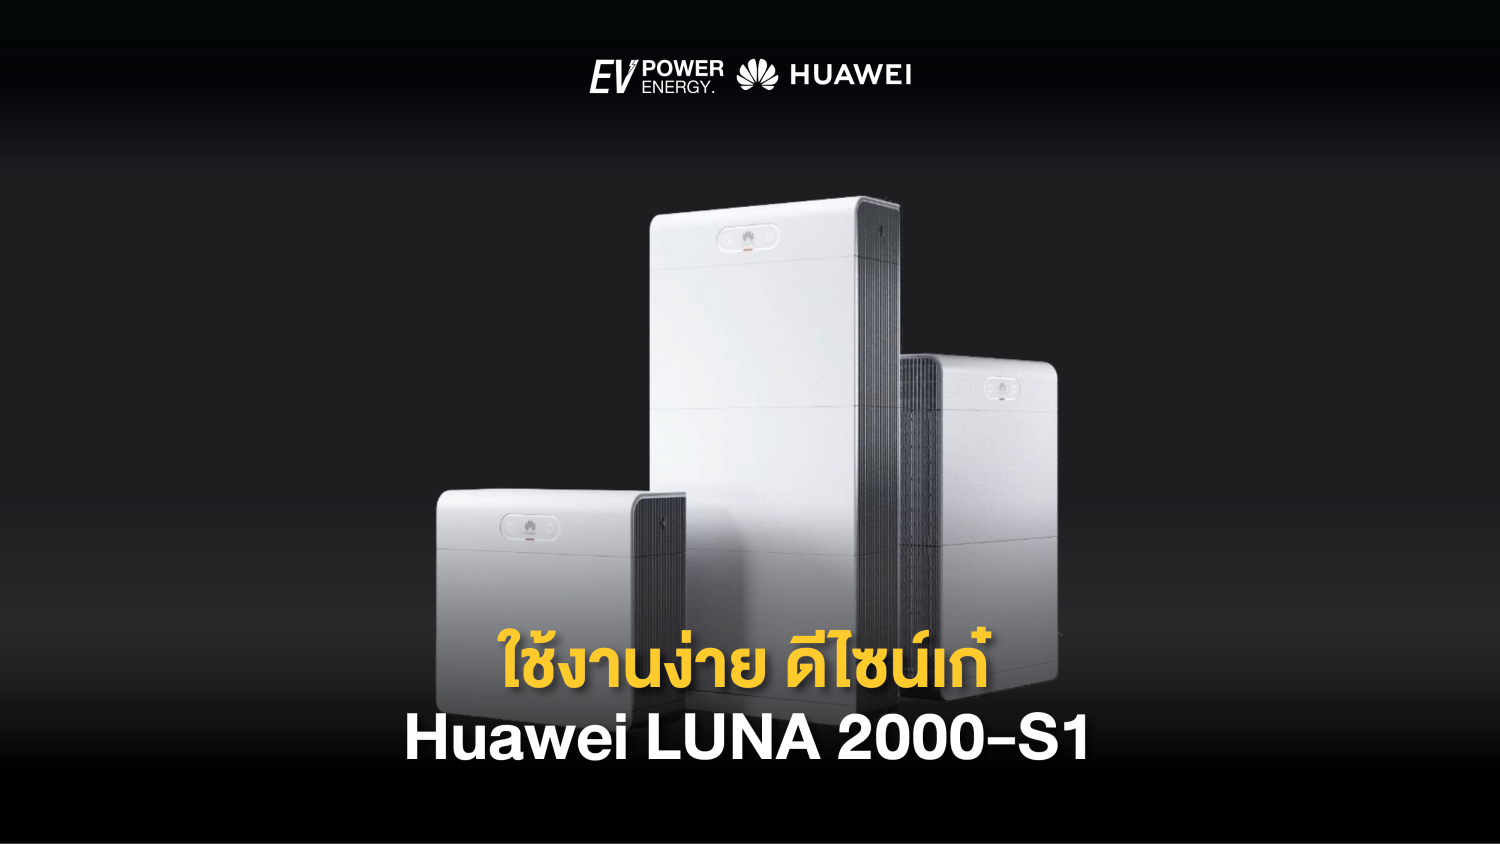 ใช้งานง่าย ดีไซน์เก๋ Huawei LUNA 2000-S1 Battery Smart Kit 1